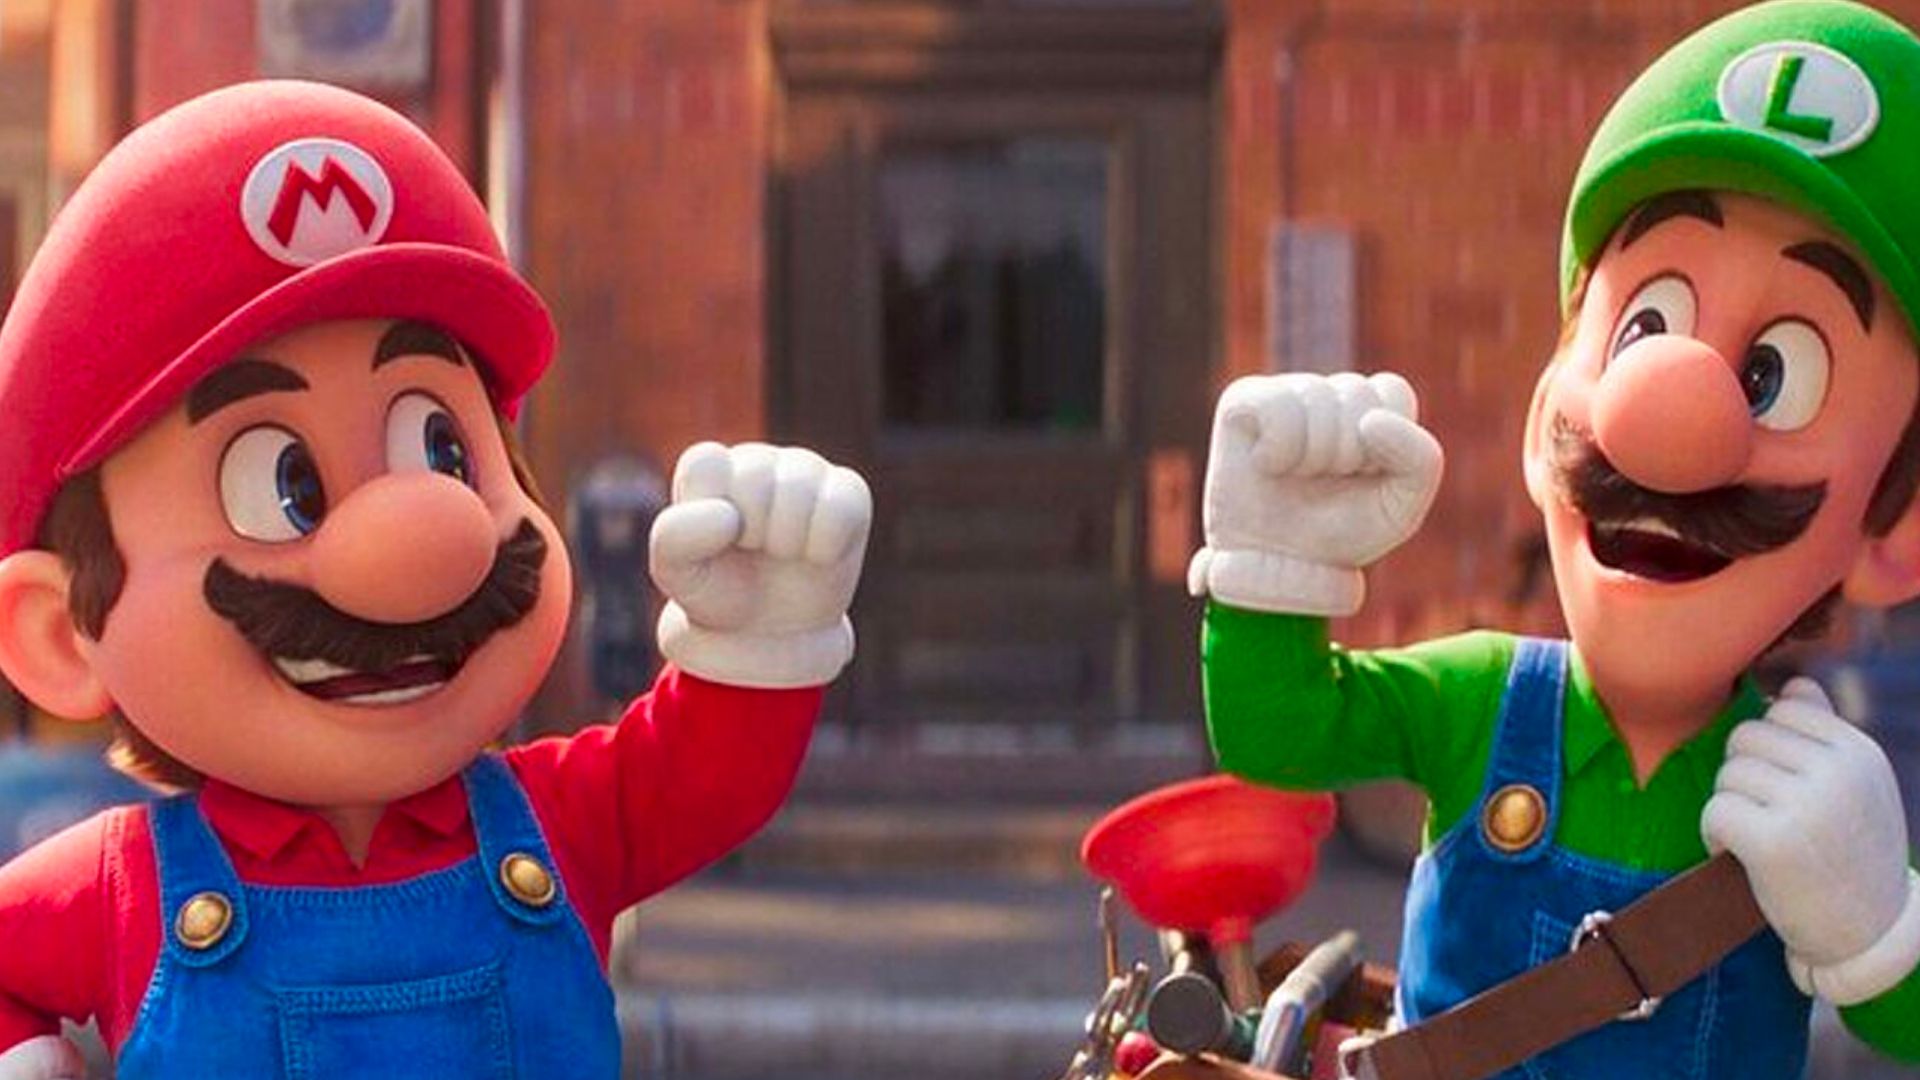 Mario y Luigi chocando puños en escena de su pelicula animada